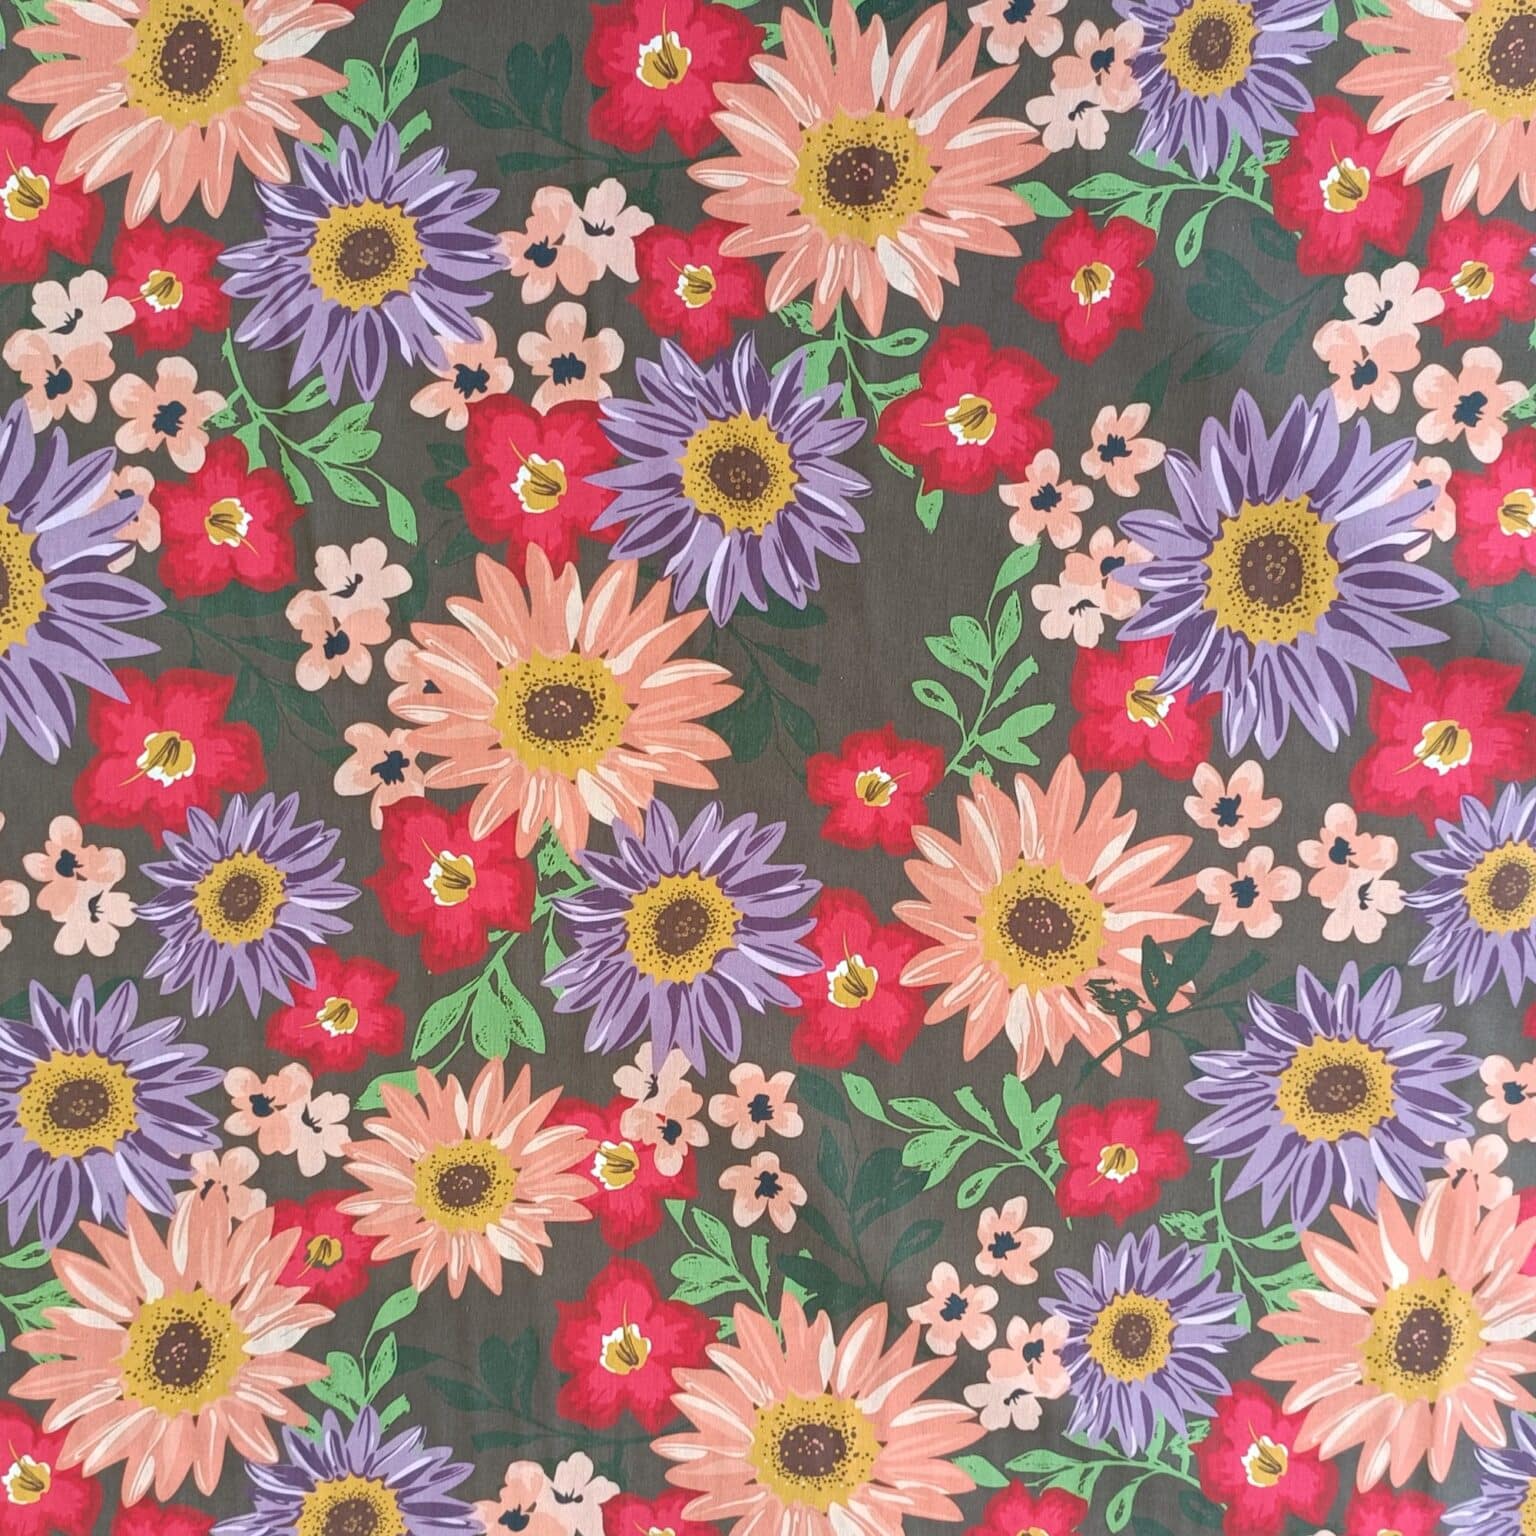 Cotton Fabric - Autumn Floral - 150cm Wide